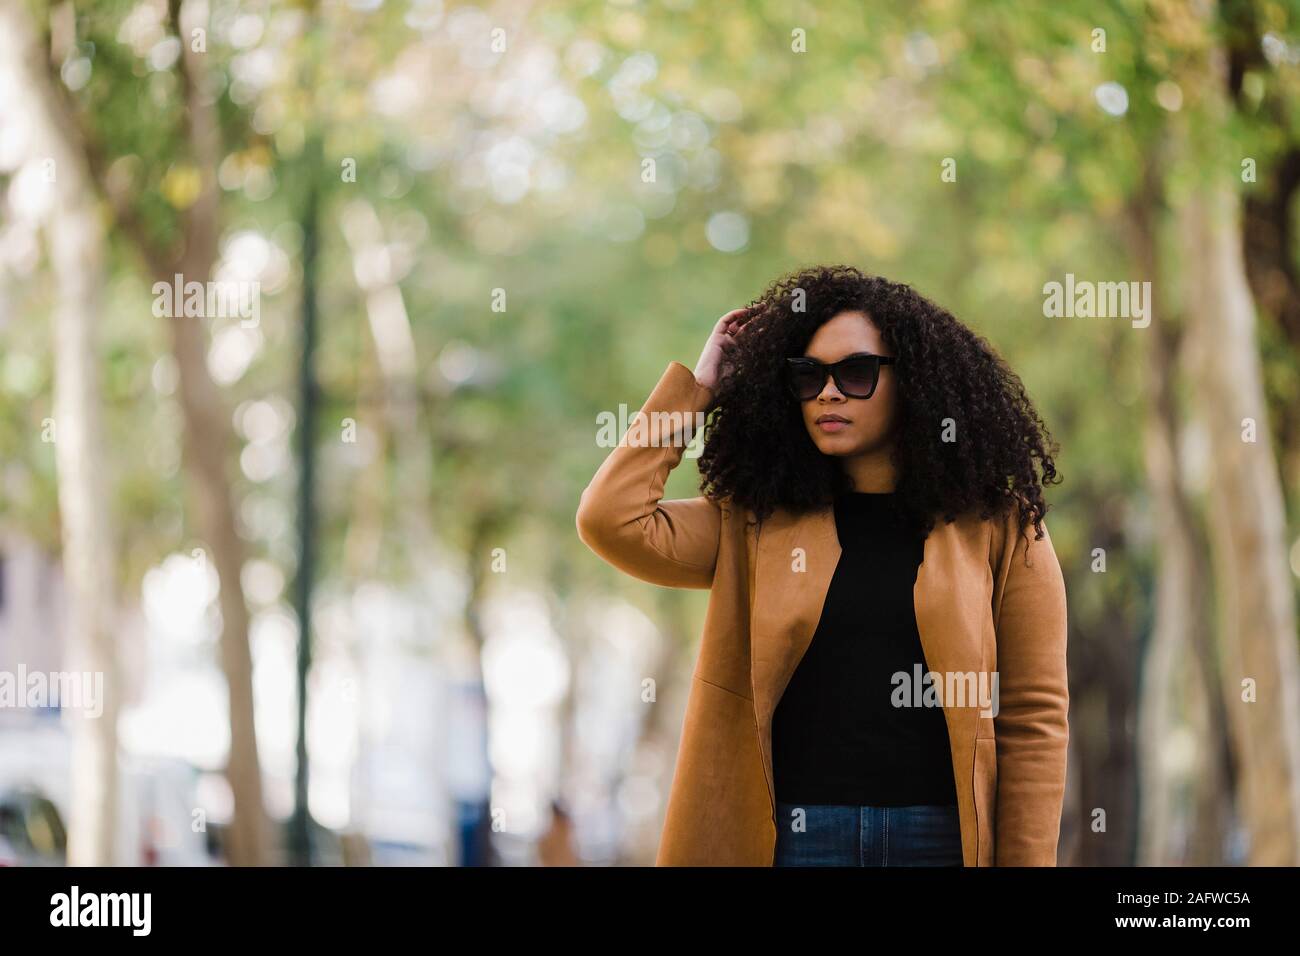 Jeune femme élégante en lunettes walking in park Banque D'Images